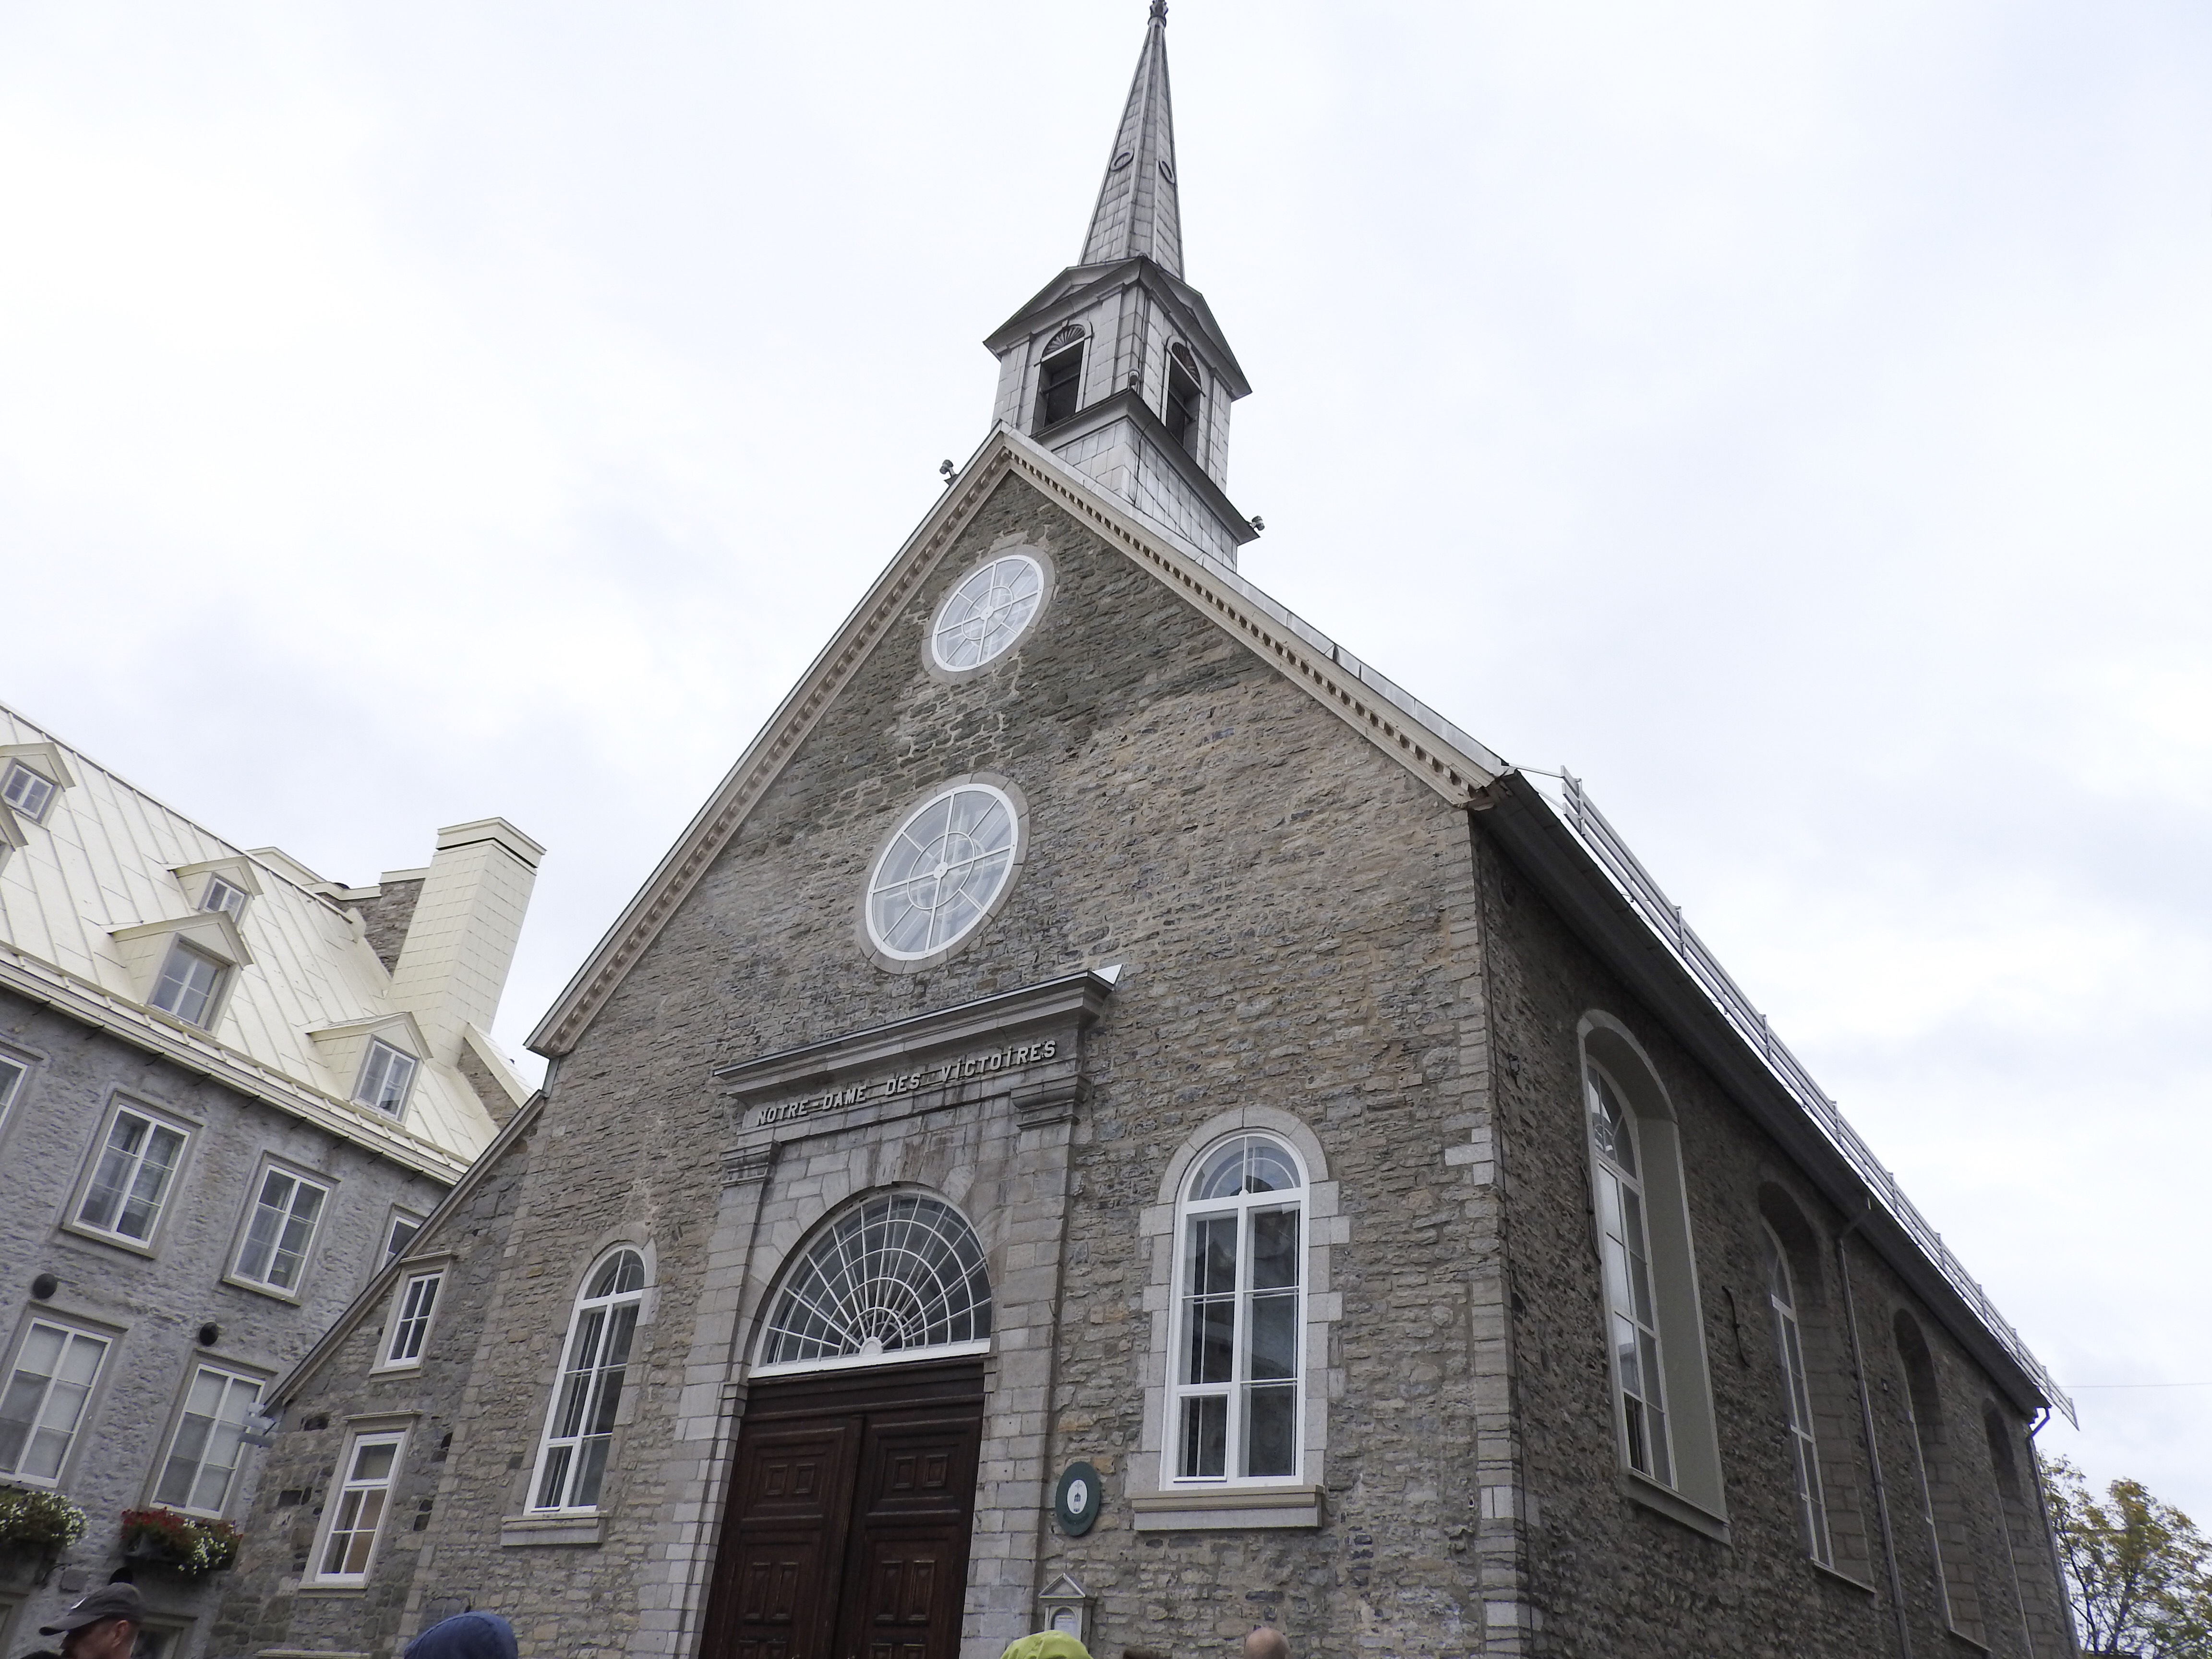 ケベックシティ観光おすすめ勝利のノートルダム教会とプチシャンプラン通り